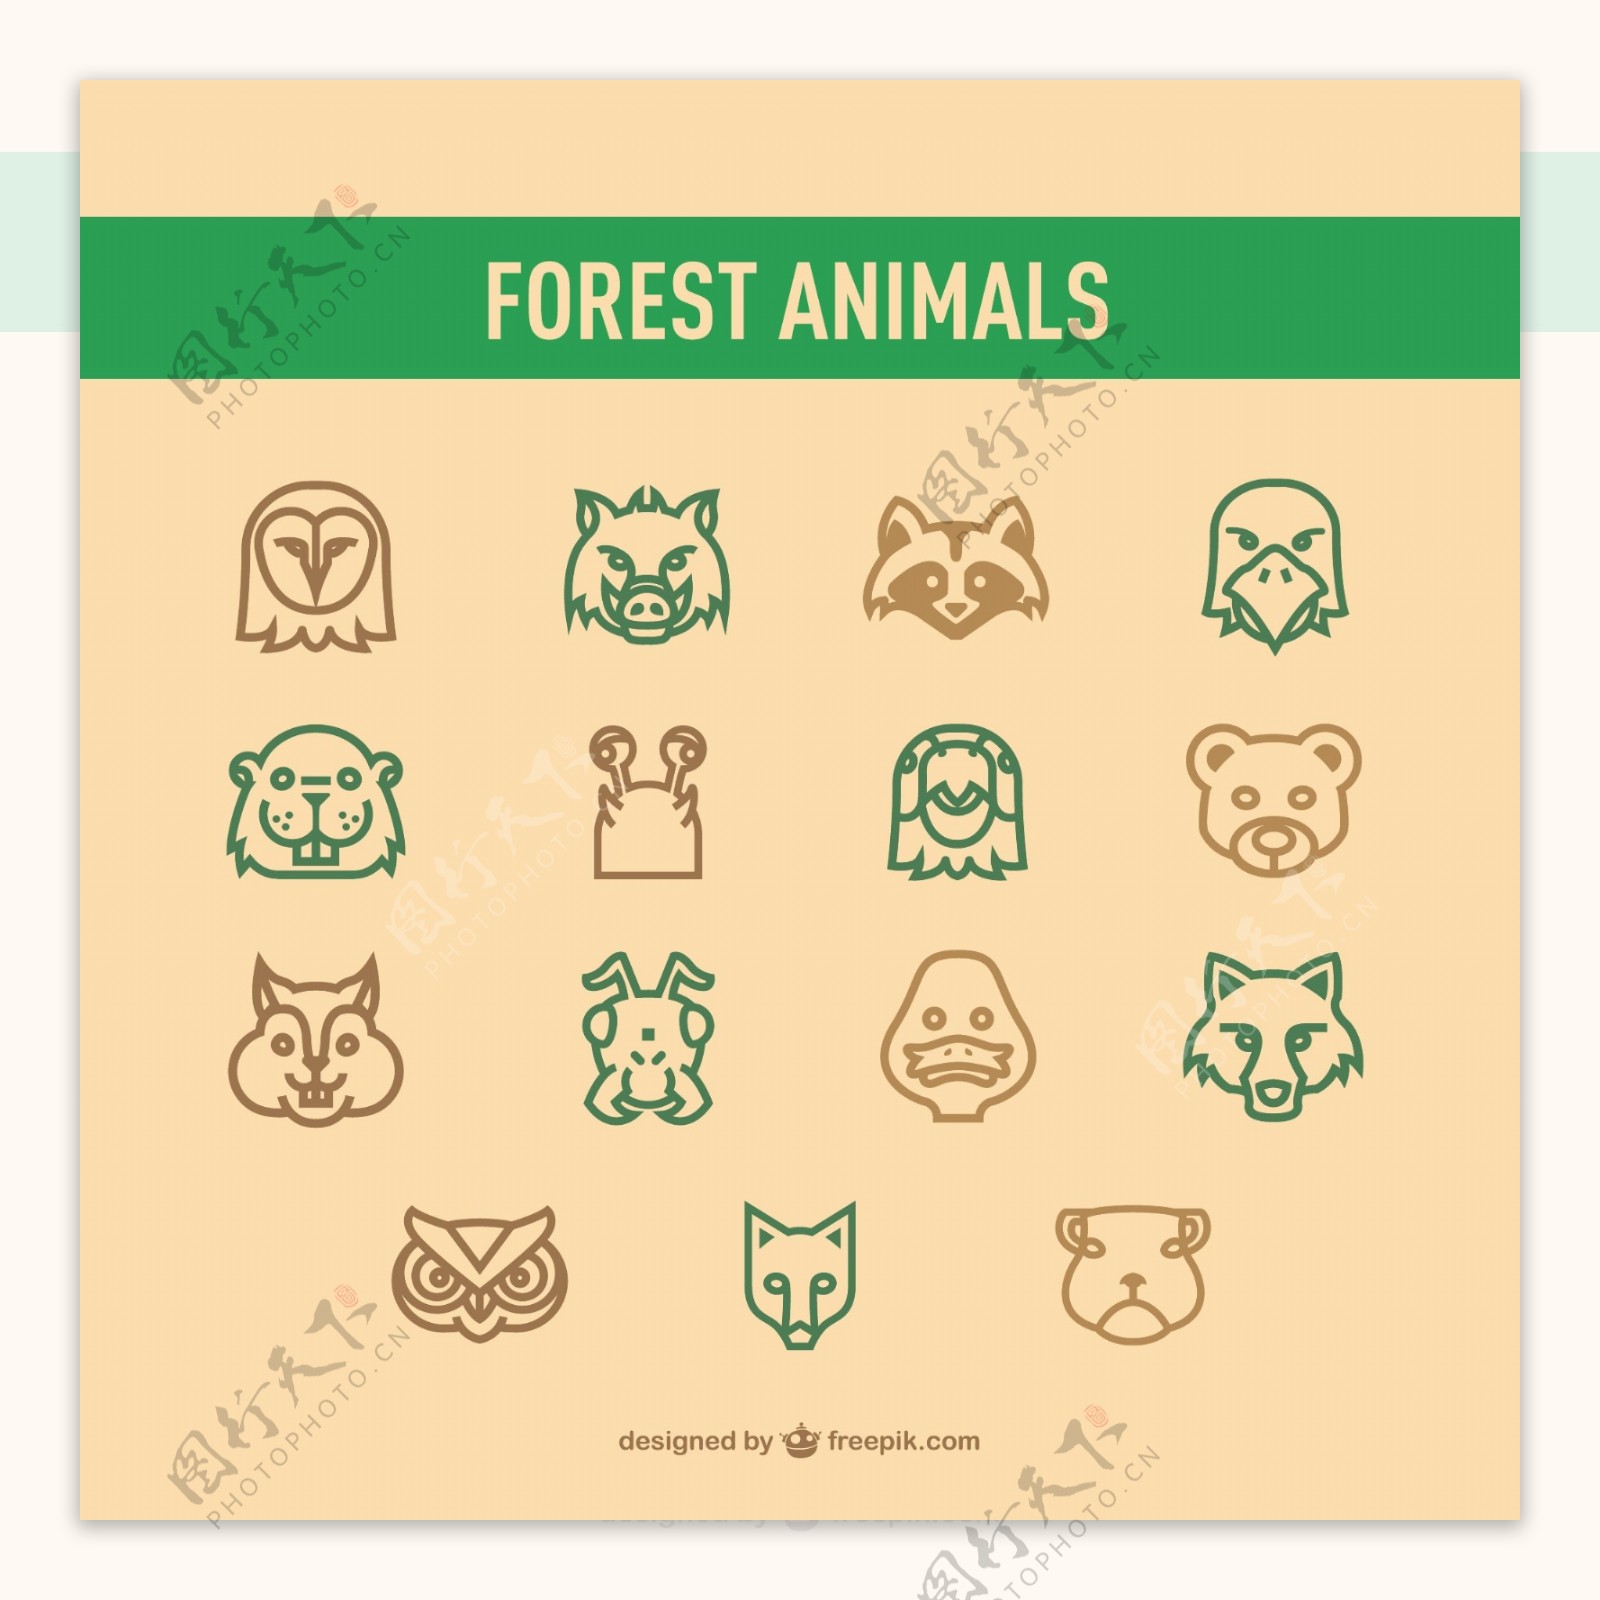 森林动物图标包